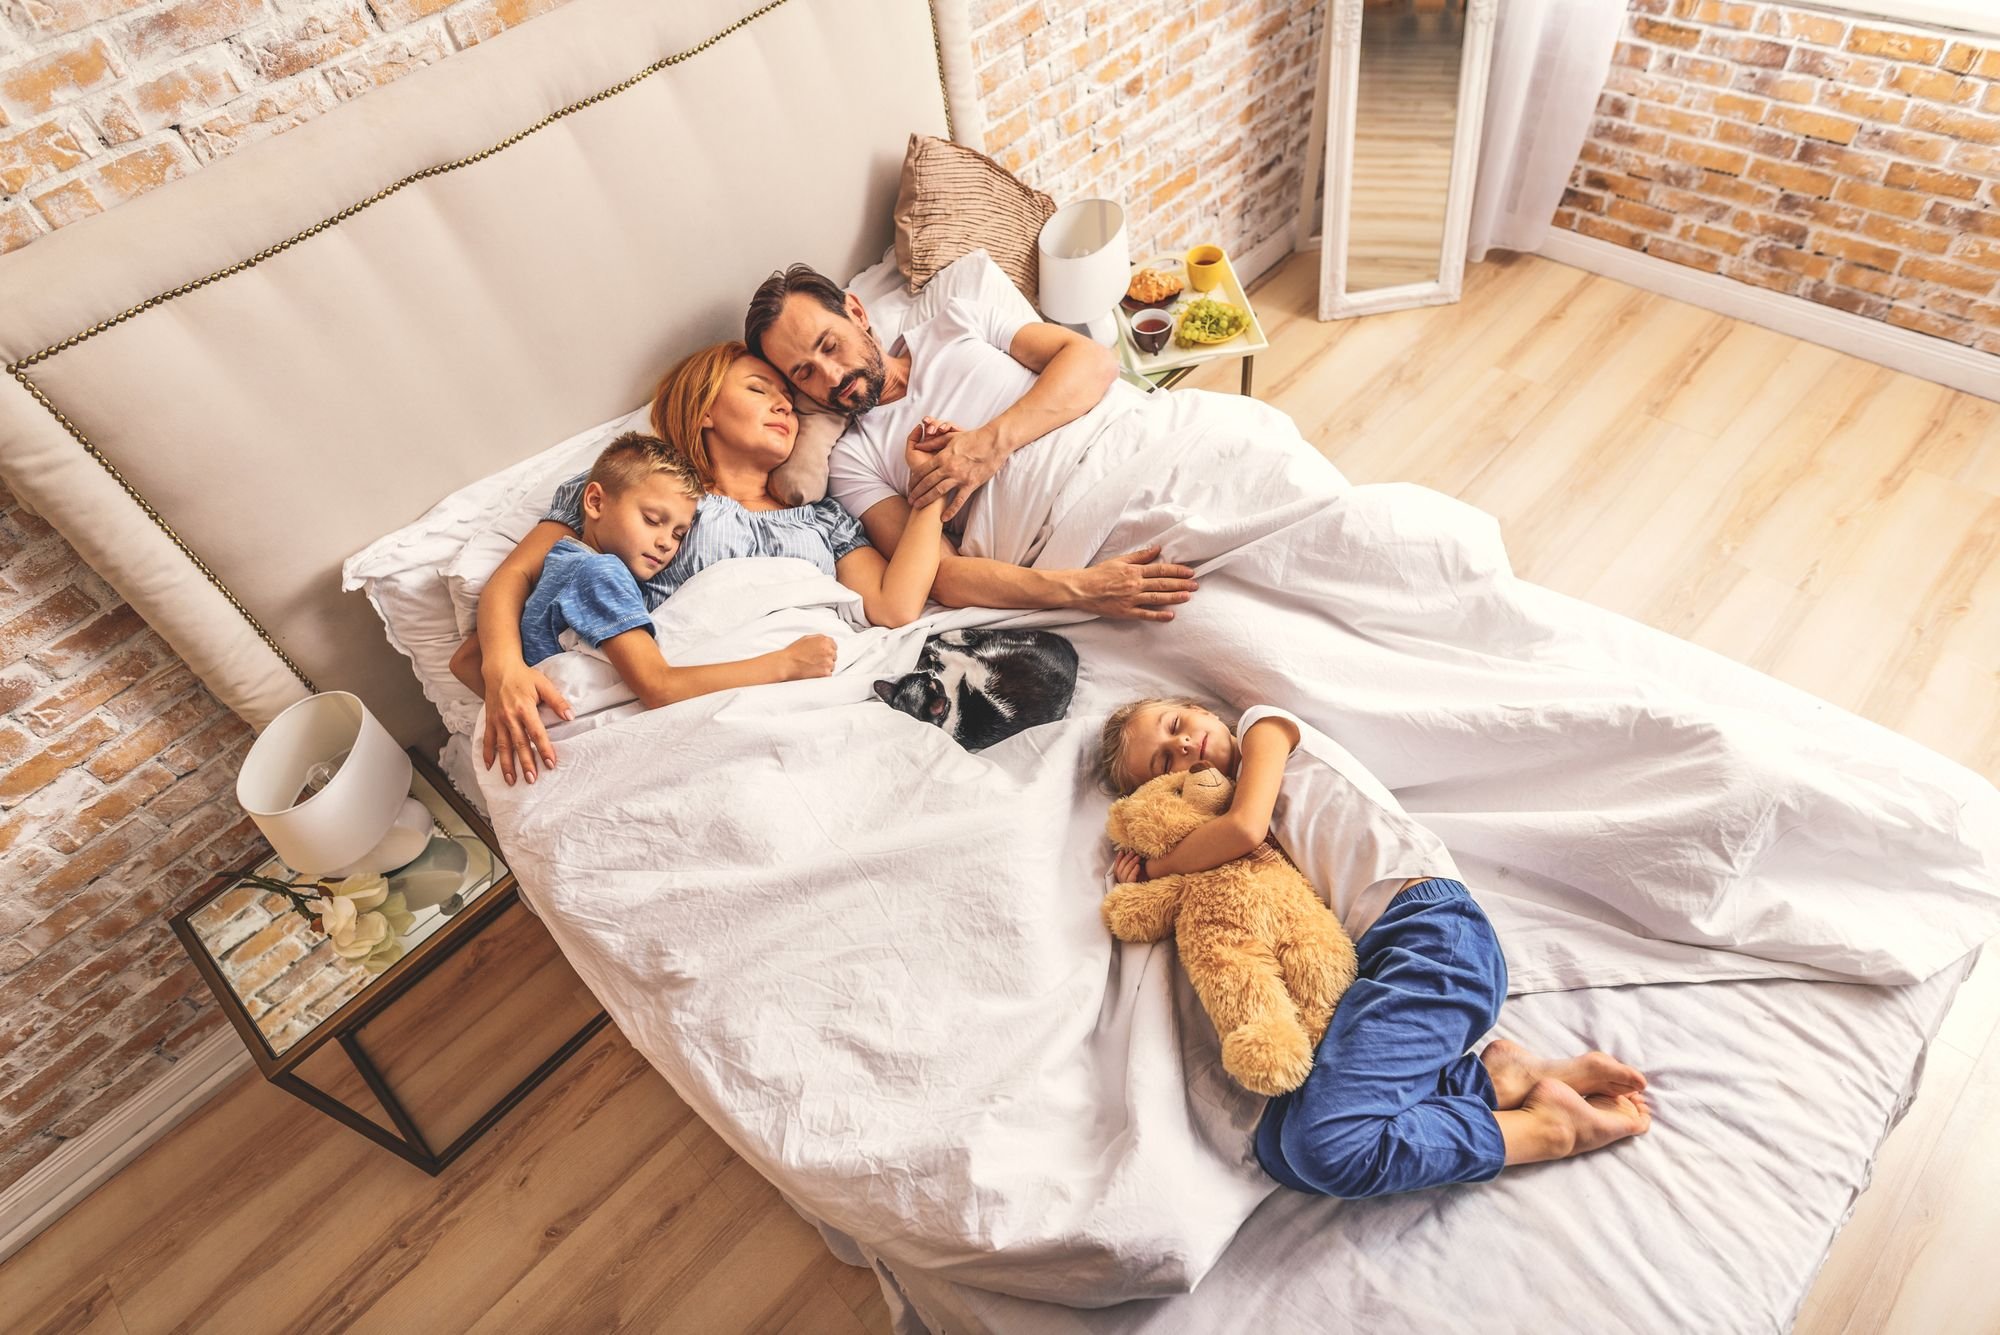 Как приучить к кроватке малыша: Секреты спокойного сна для всей семьи